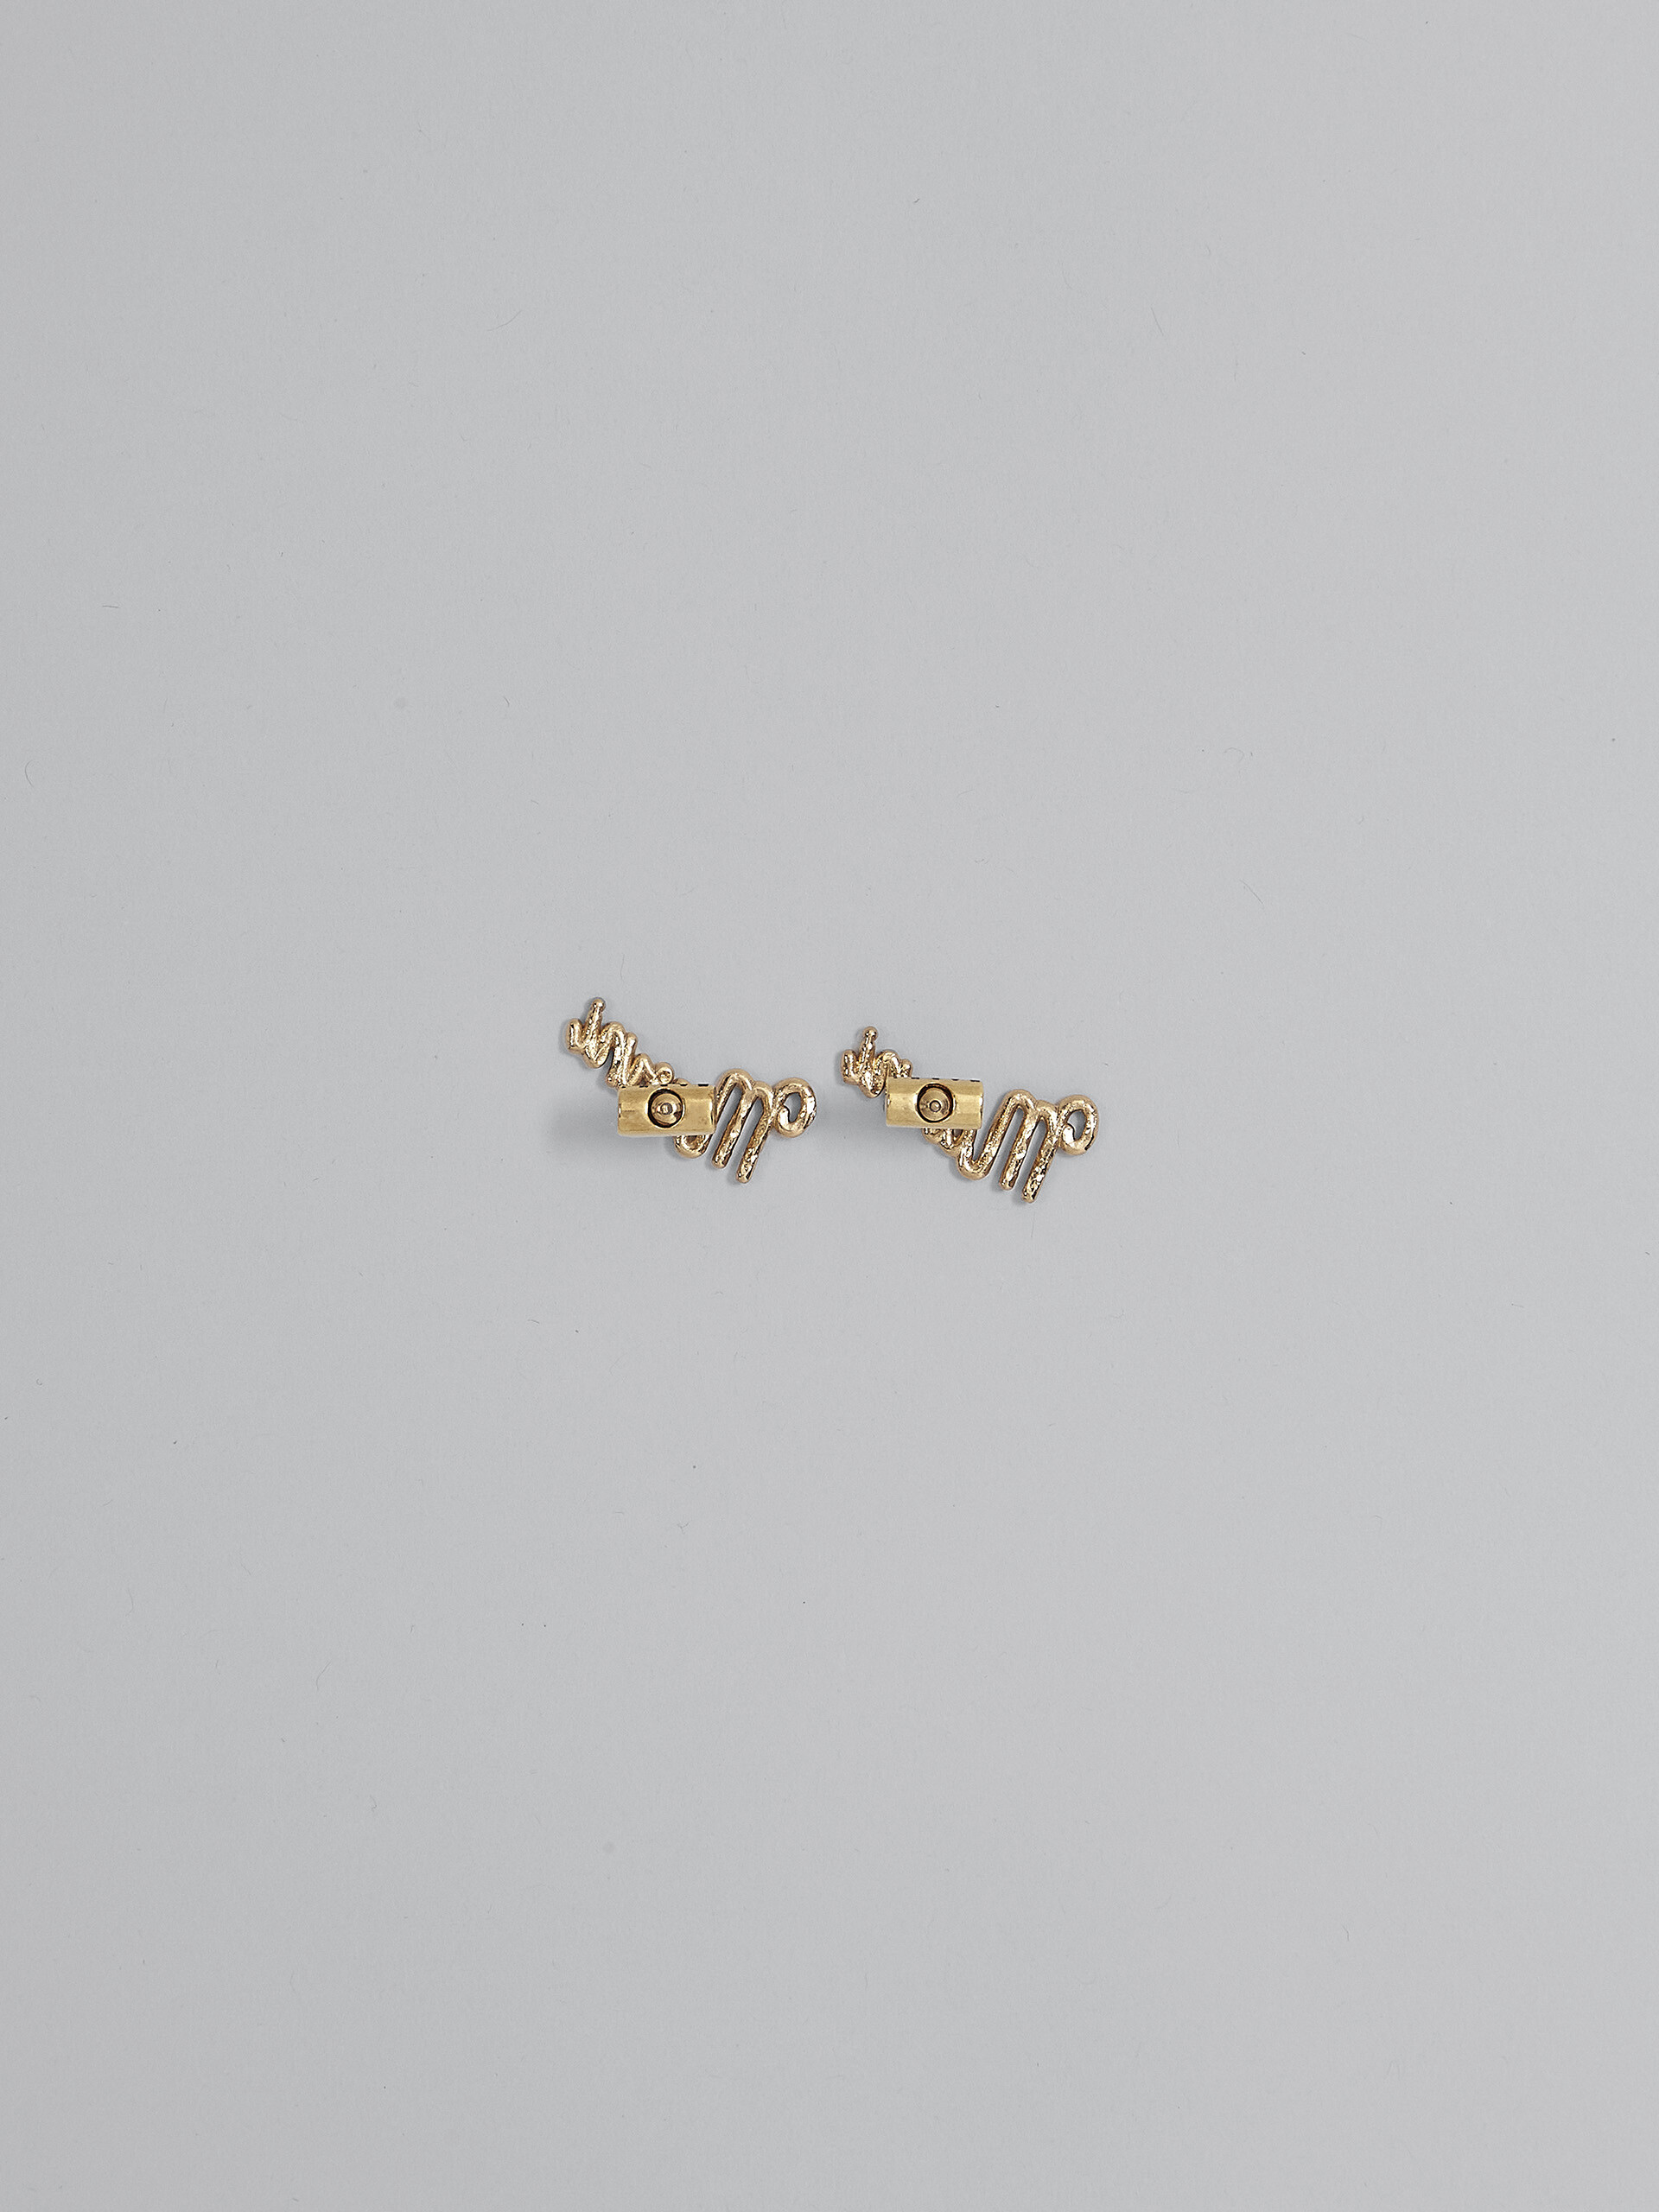 LOGO earrings - Earrings - Image 3